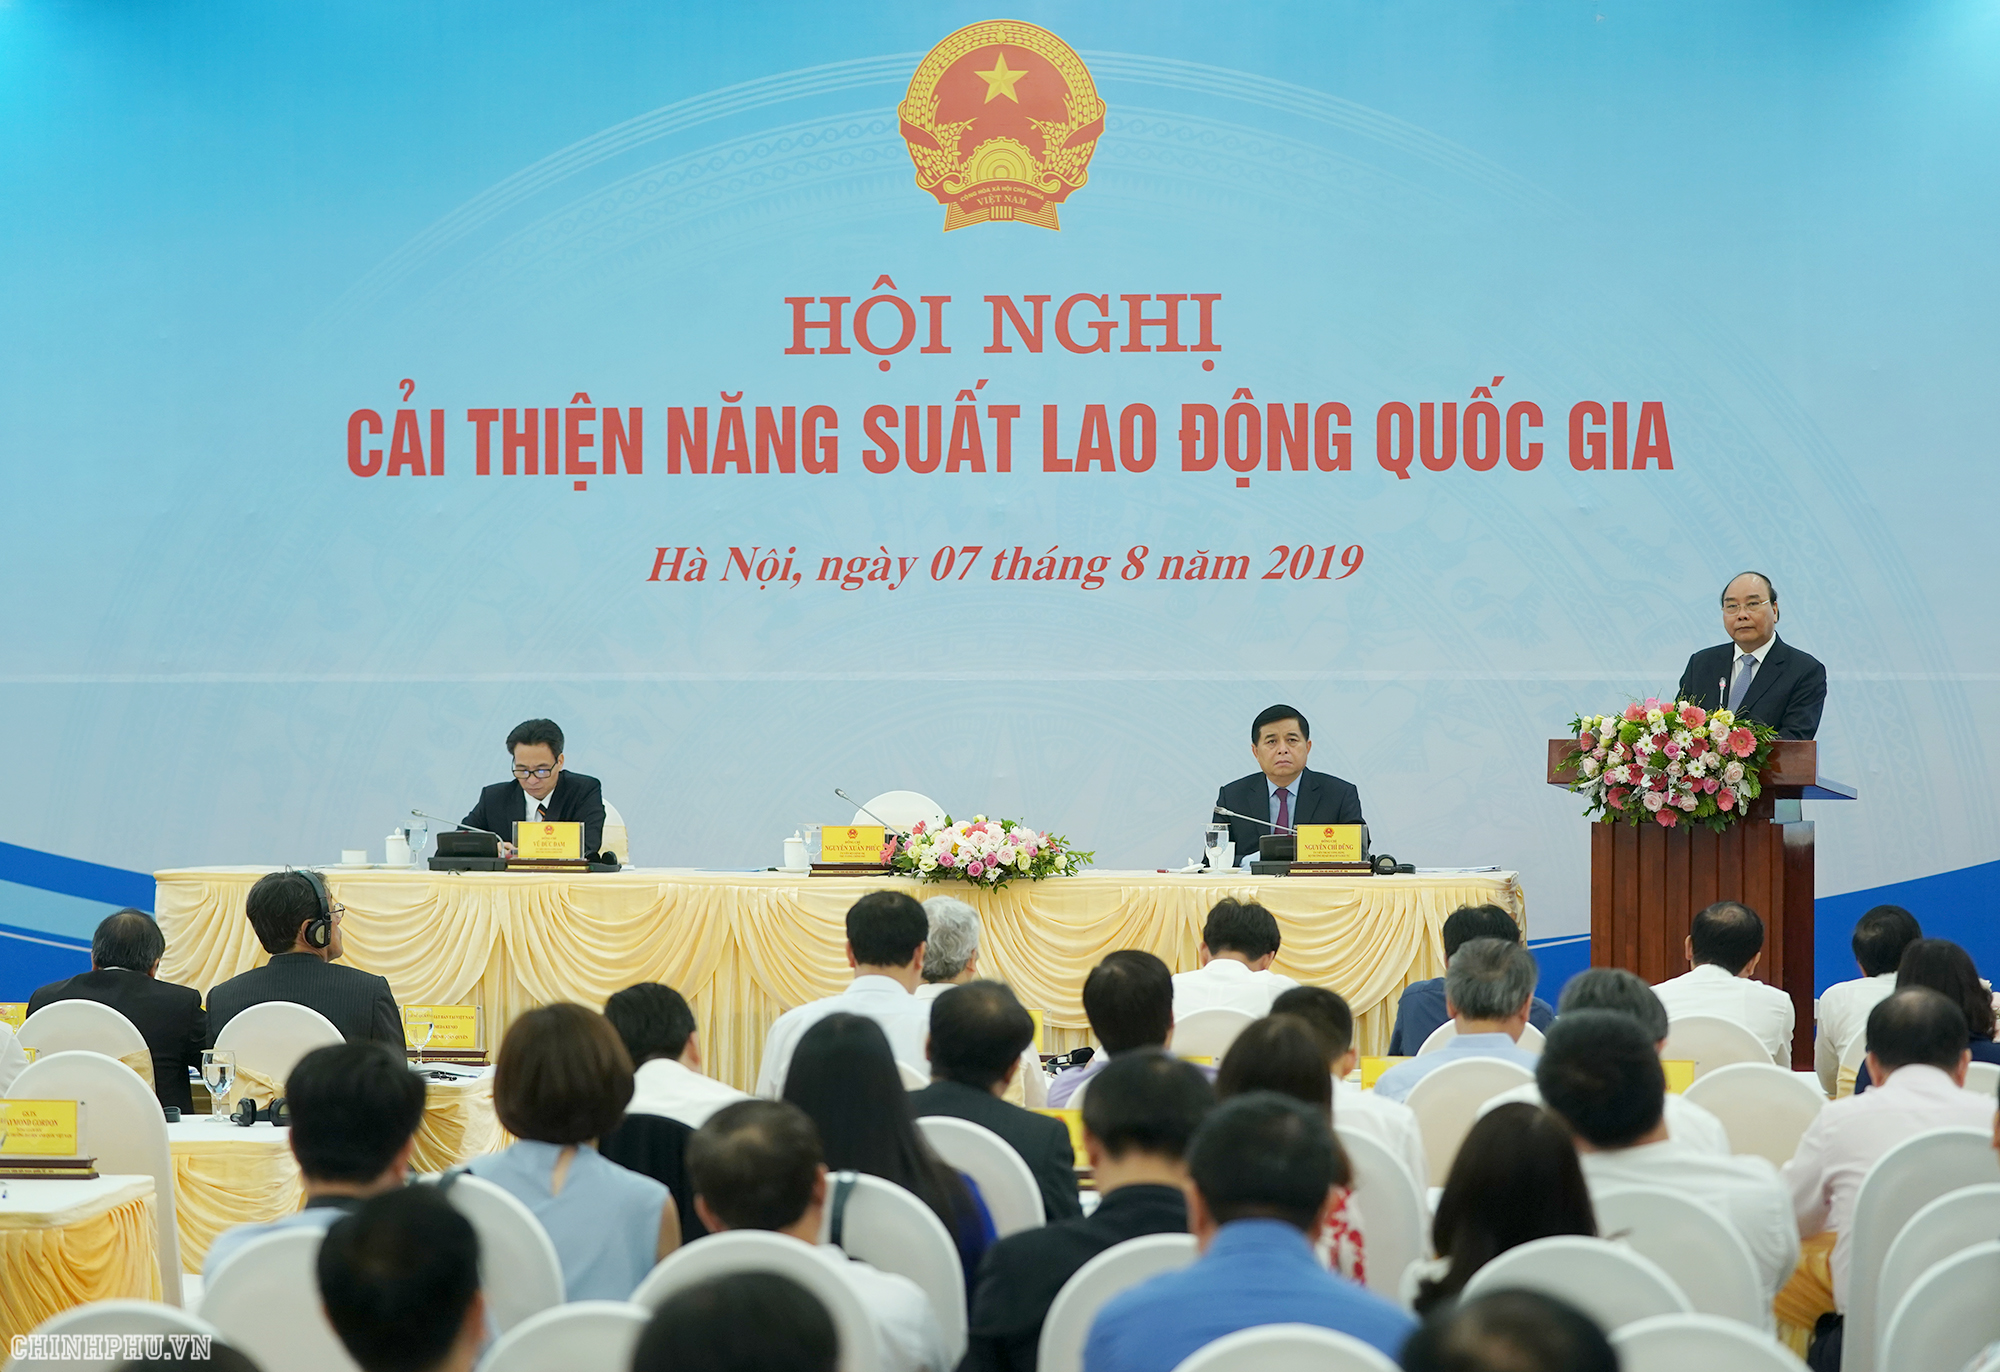 Thủ tướng Nguyễn Xuân Phúc phát biểu tại Hội nghị về cải thiện năng suất lao động quốc gia.